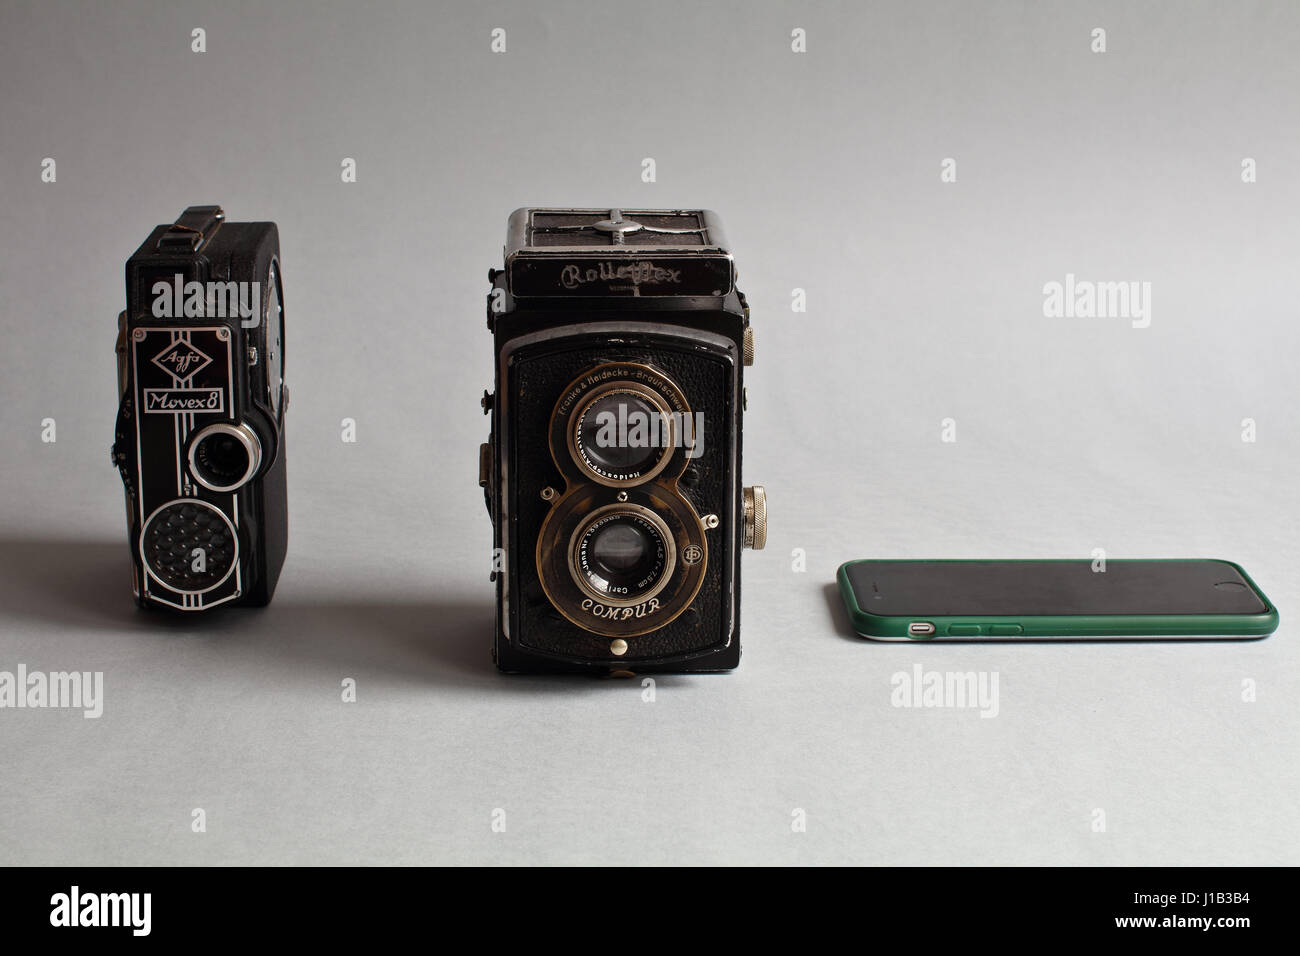 Più di due in uno. Smartphone è più di telecamere. Antique telecamera analogica. Ottica e strumenti meccanici - attrezzature fotografiche. Foto Stock